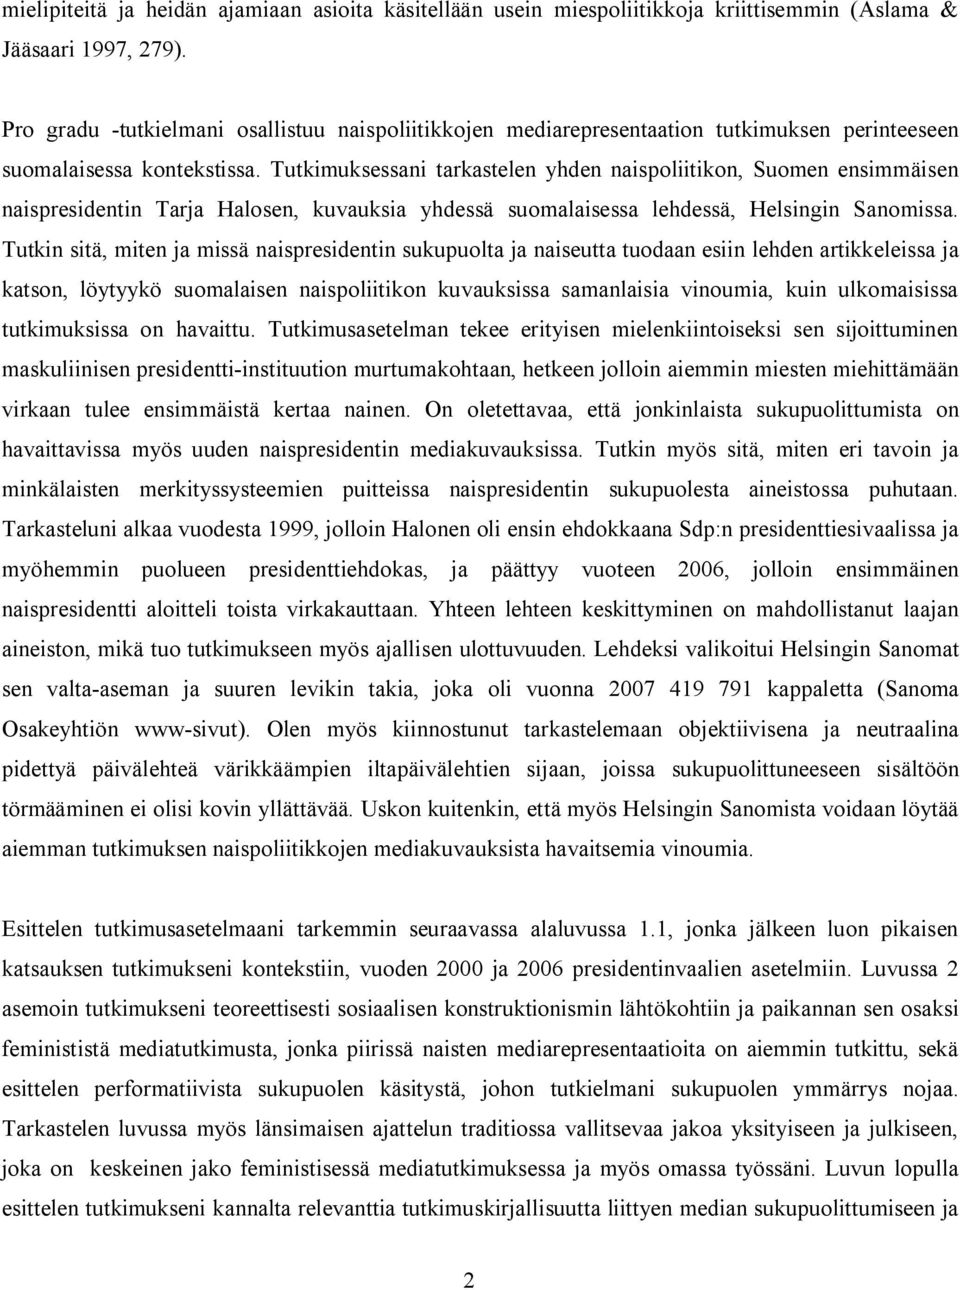 Tutkimuksessani tarkastelen yhden naispoliitikon, Suomen ensimmäisen naispresidentin Tarja Halosen, kuvauksia yhdessä suomalaisessa lehdessä, Helsingin Sanomissa.